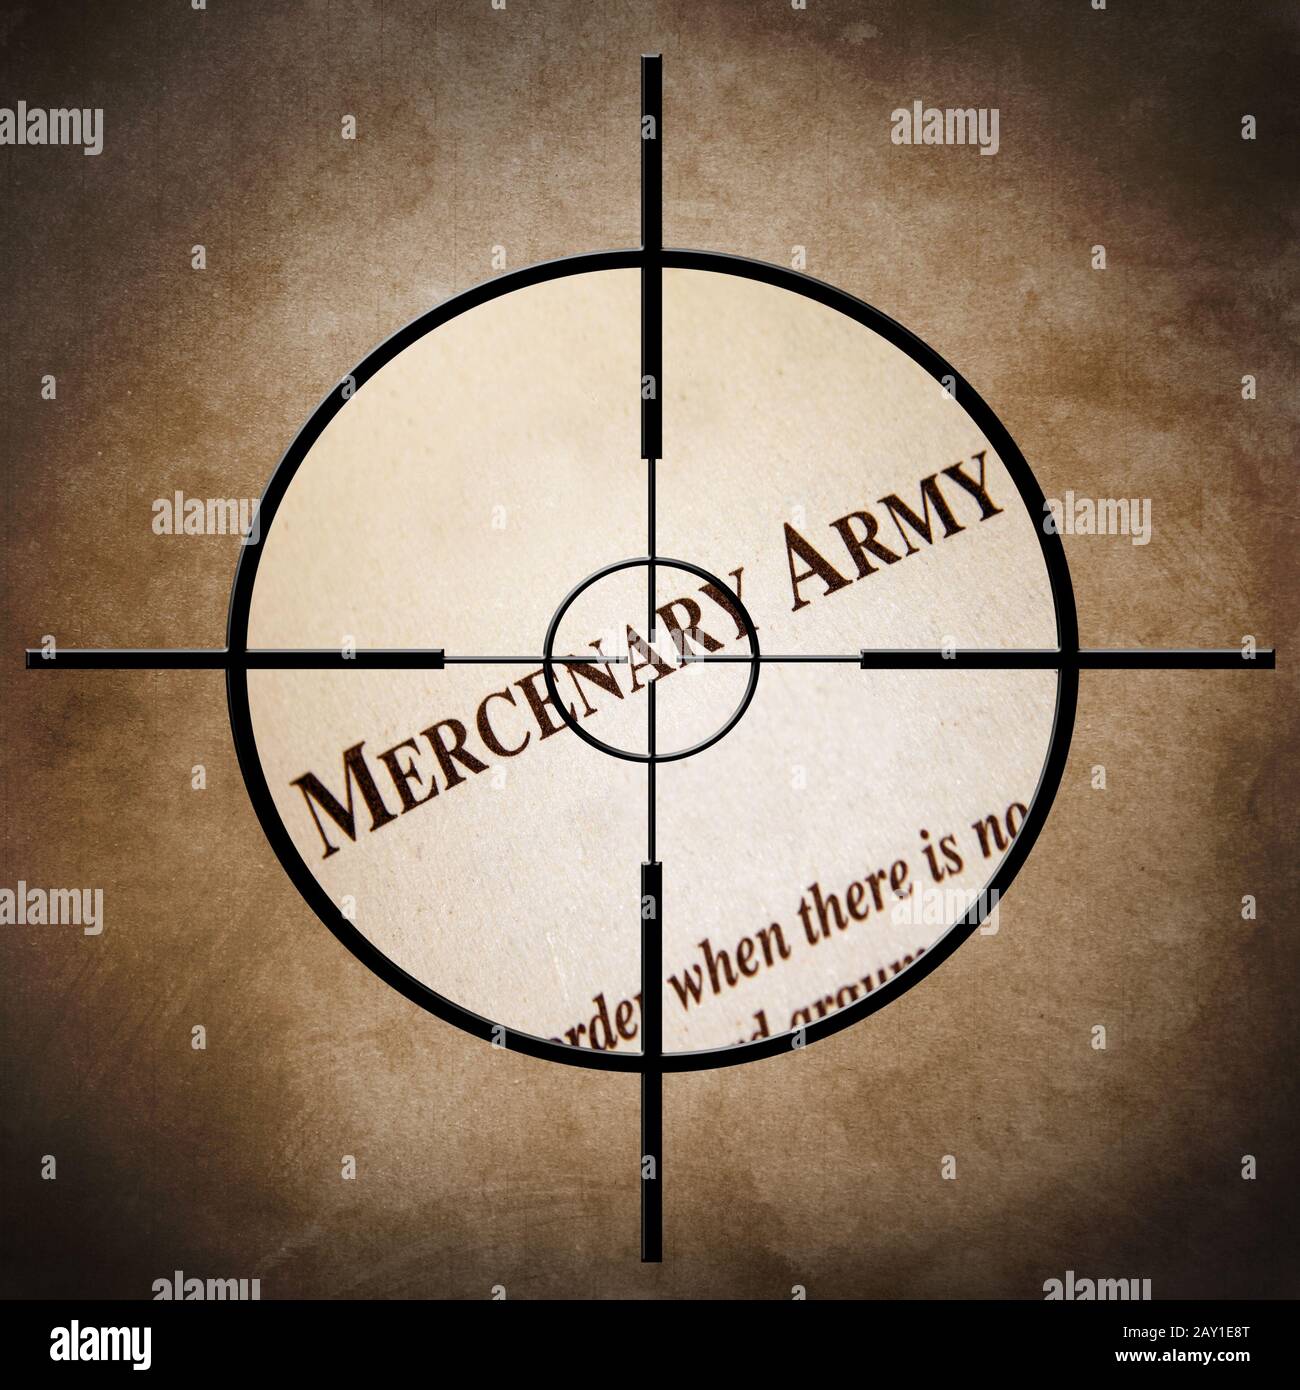 Mercenary army Stock Photo